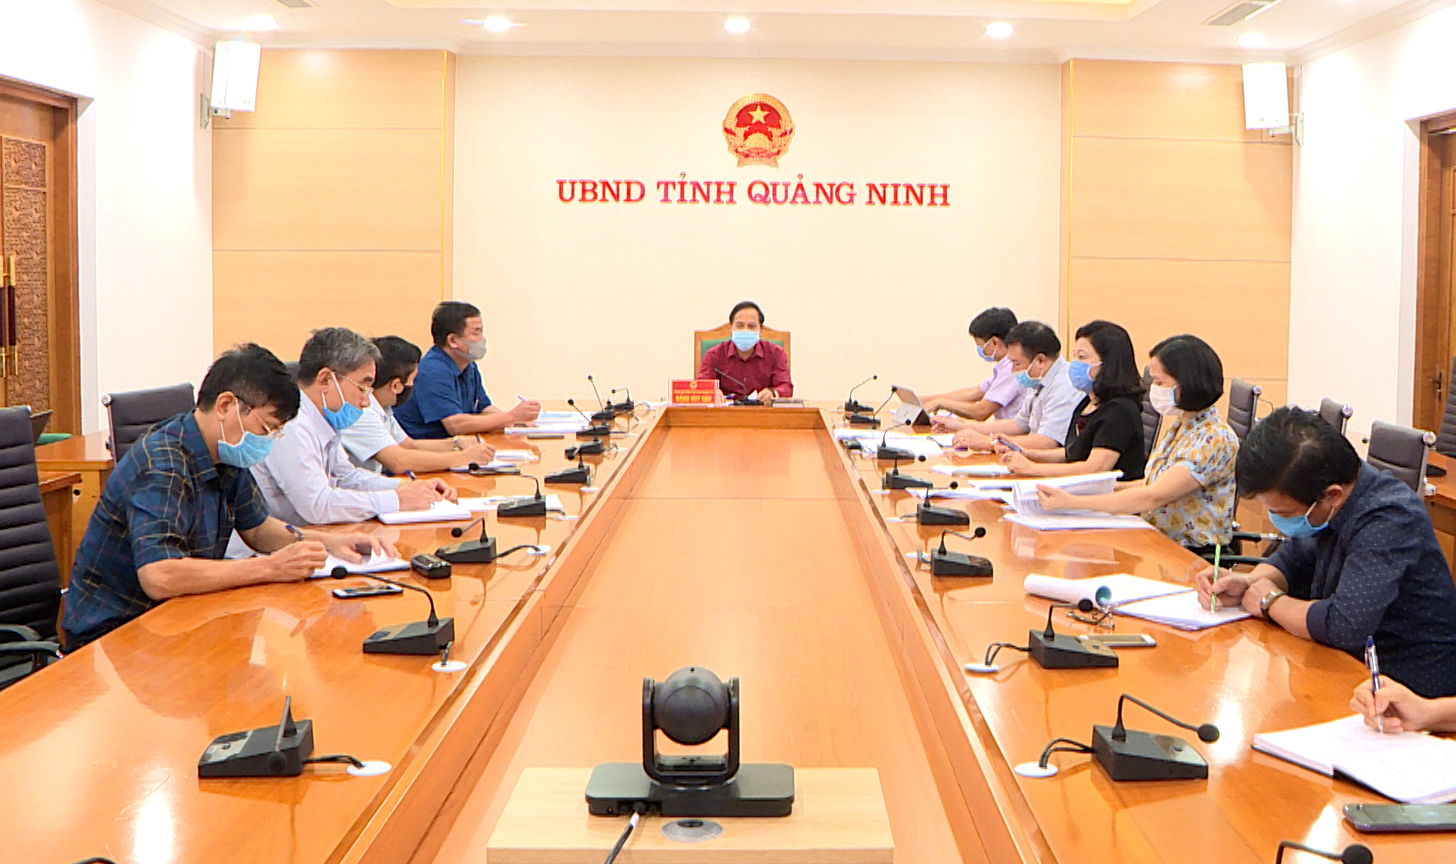 Đồng chí Đặng Huy Hậu nghe báo cáo về kế hoạch tổ chức Đại hội Liên minh HTX tỉnh Quảng Ninh.